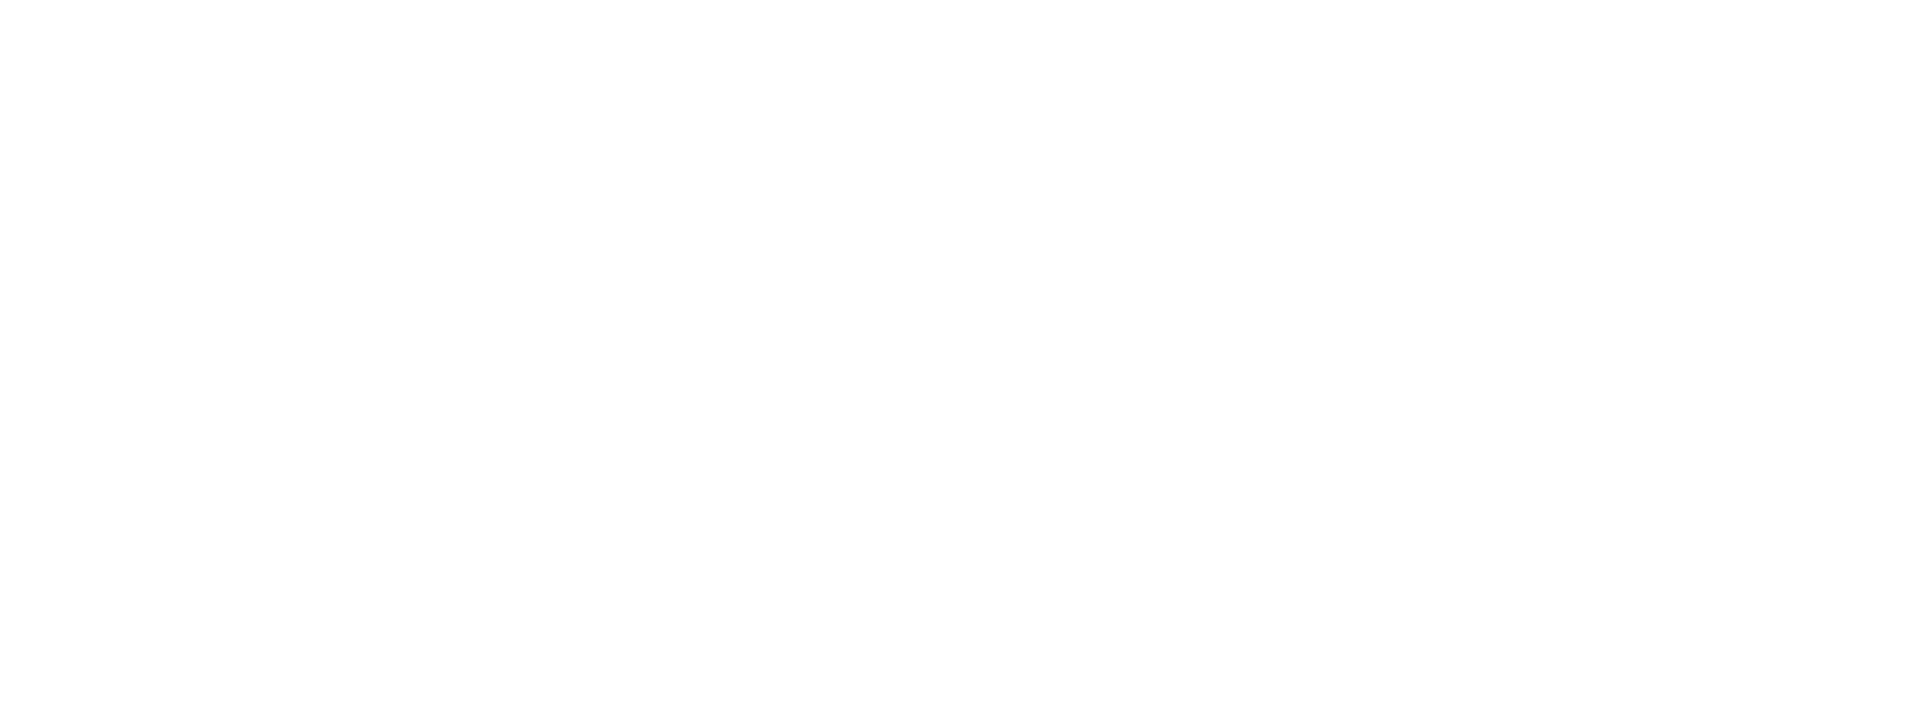 阿拉伯banner3下